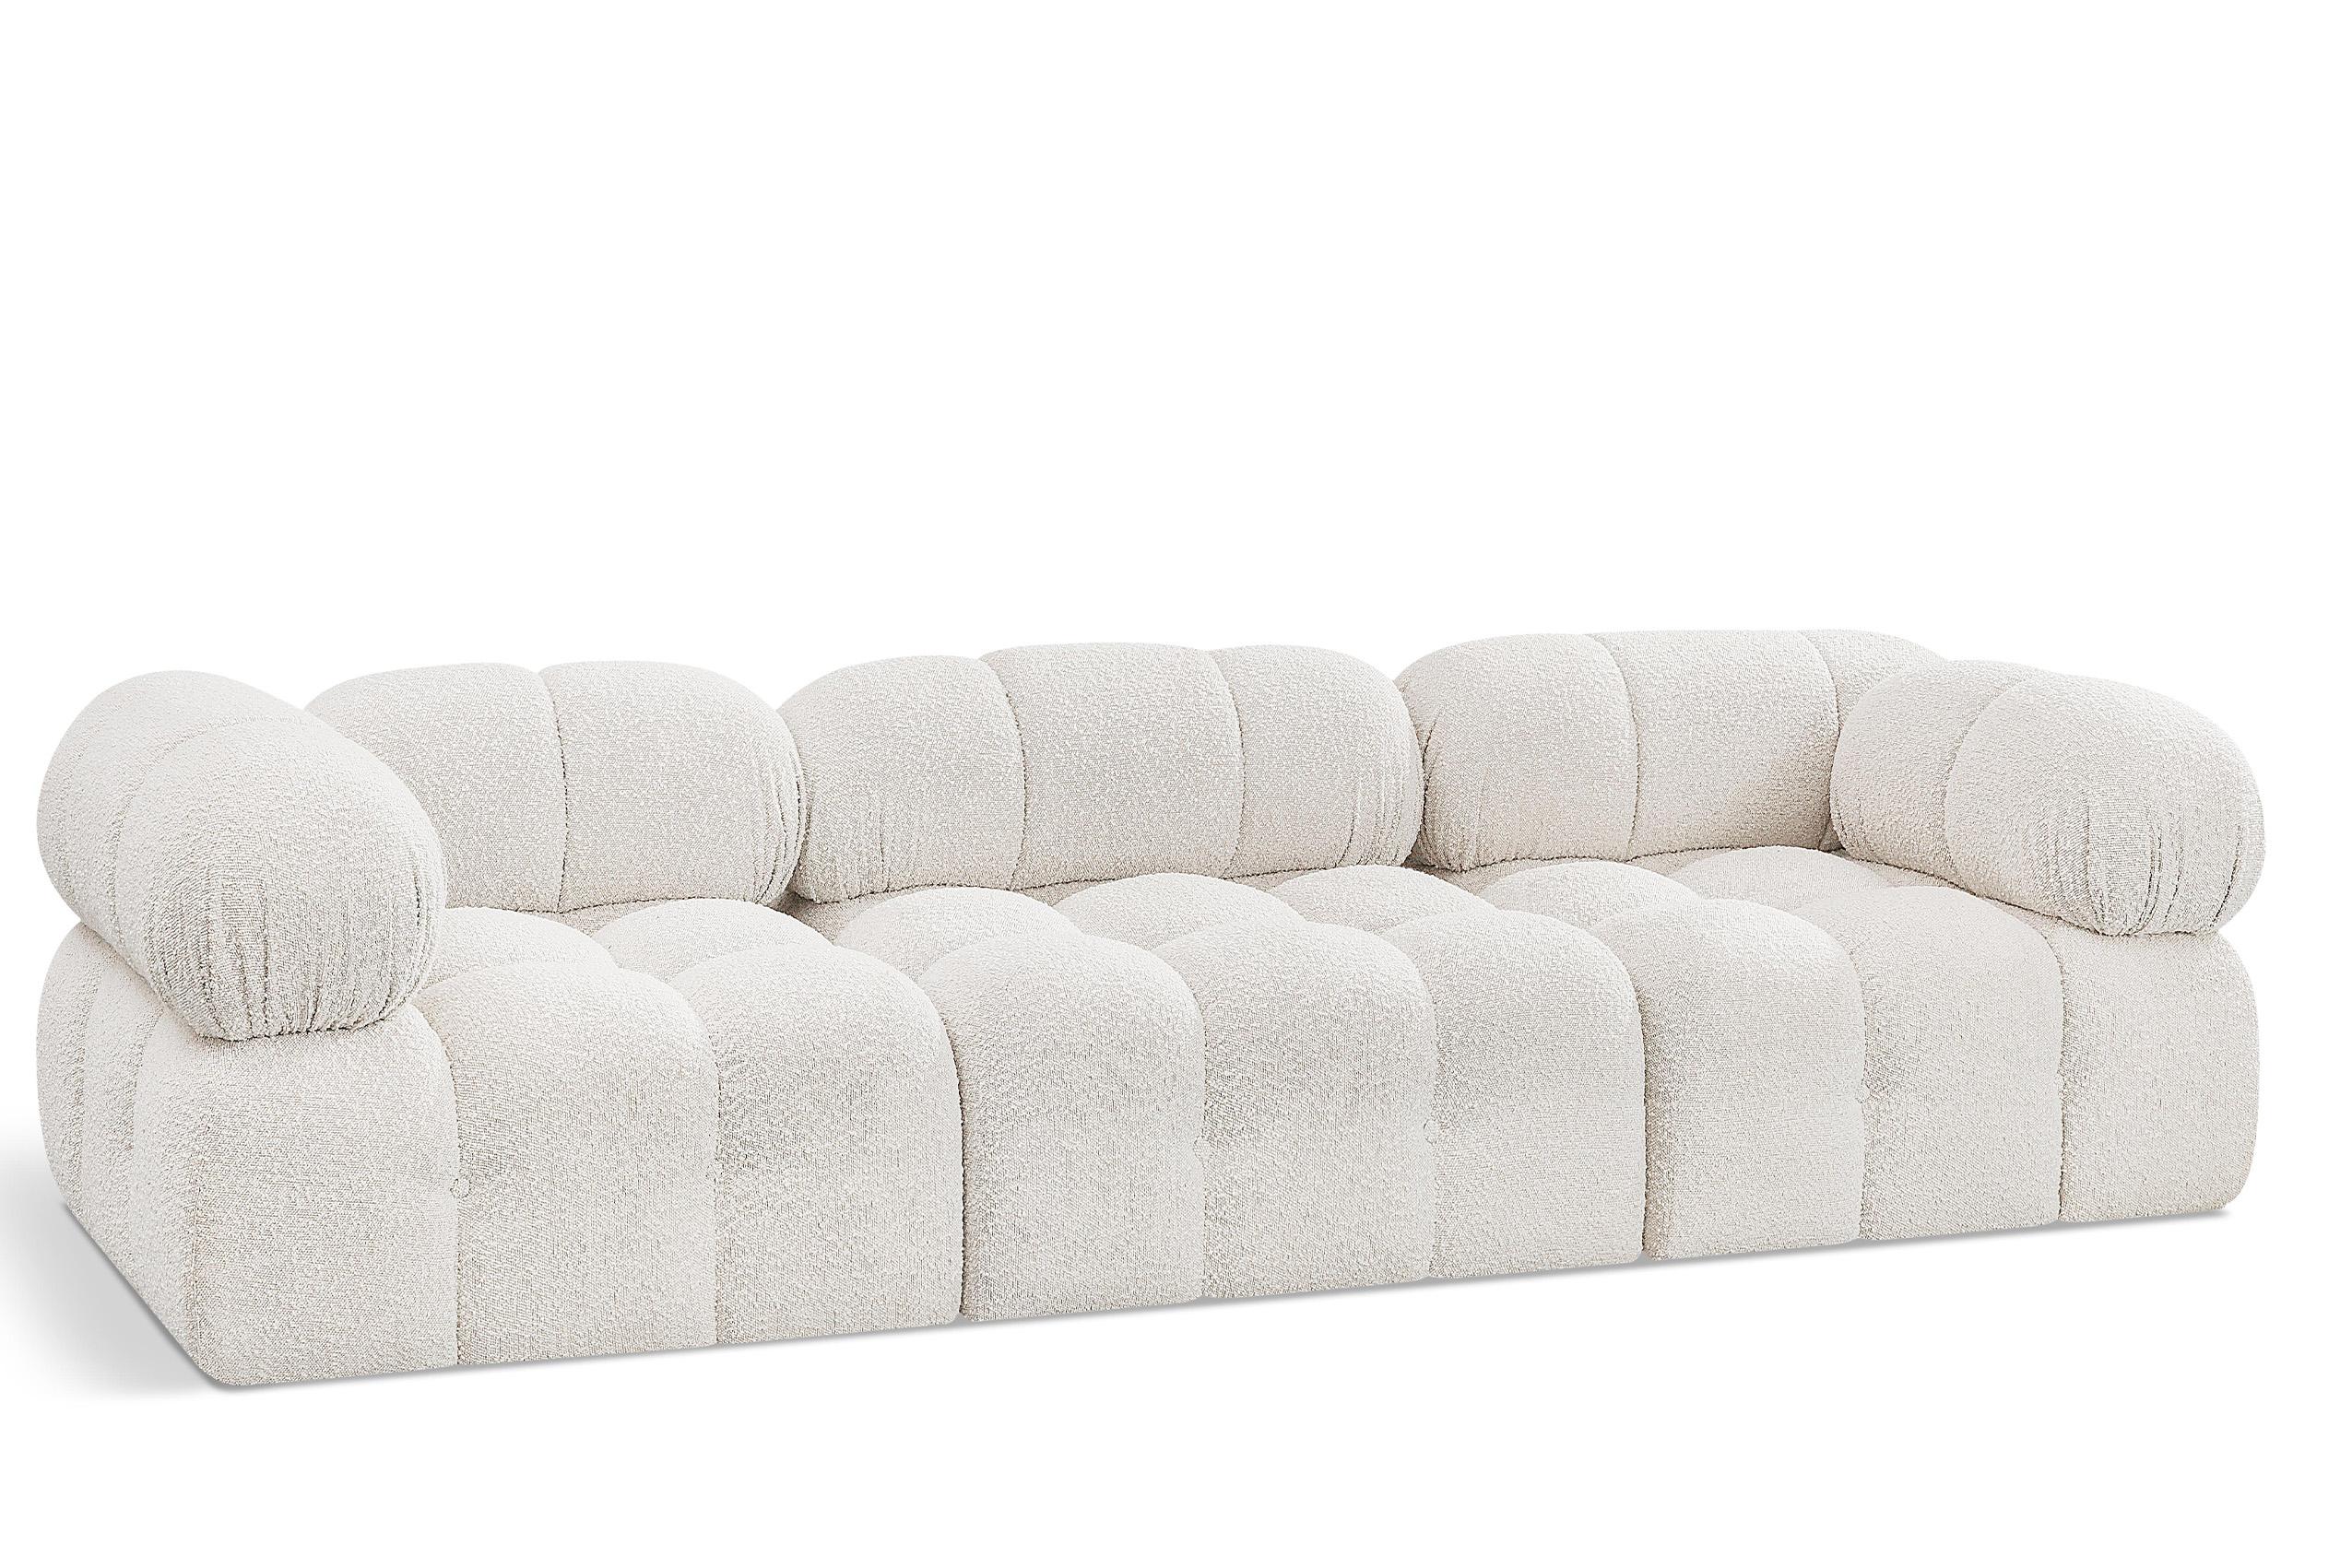 Contemporary, Modern Modular Sofa AMES 611Cream-S102A 611Cream-S102A in Cream 